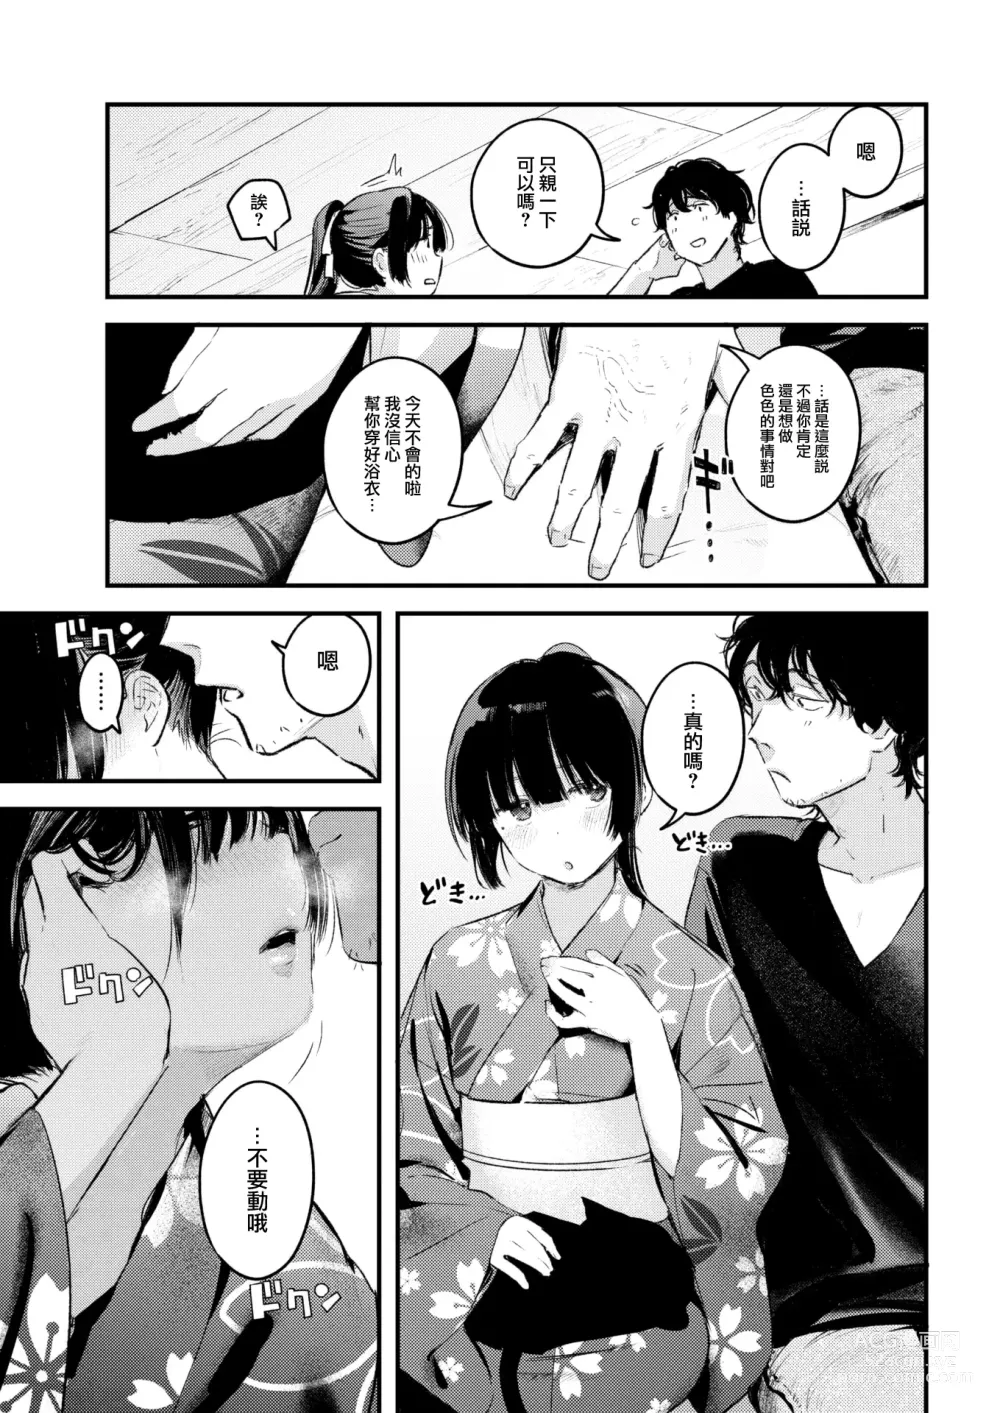 Page 18 of manga Koi no Mukidashi